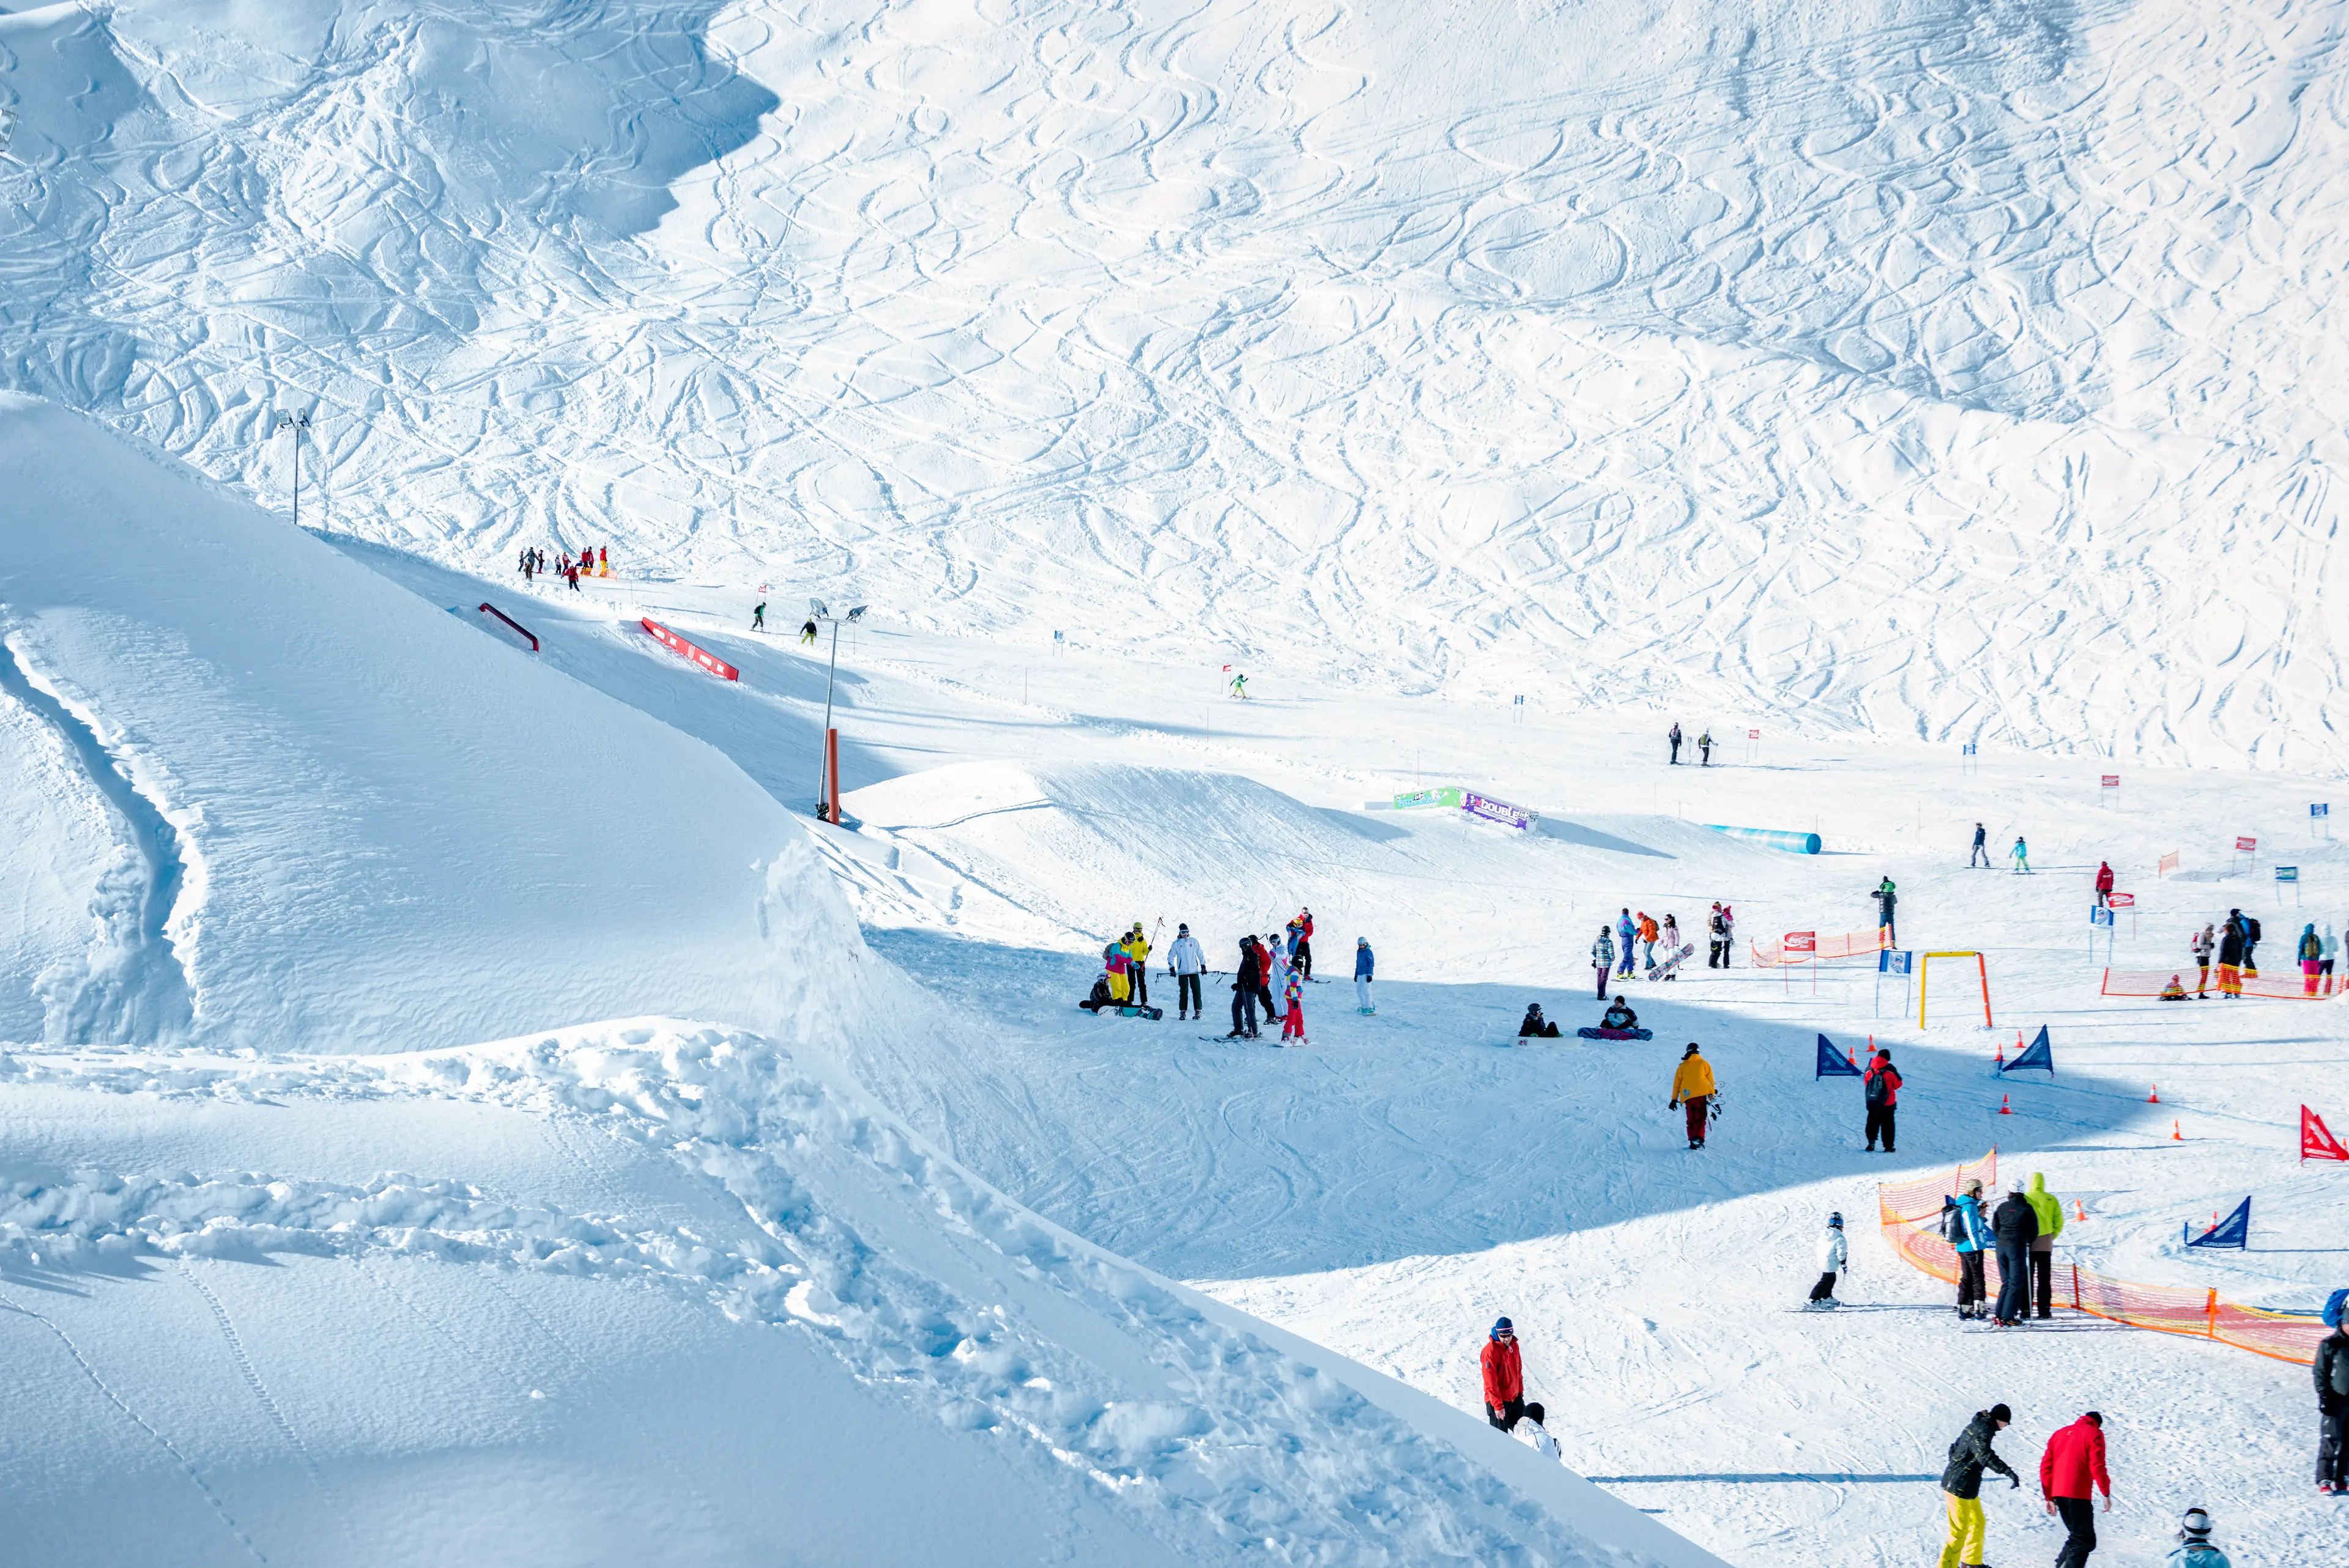 People enjoying an alpine ski resort